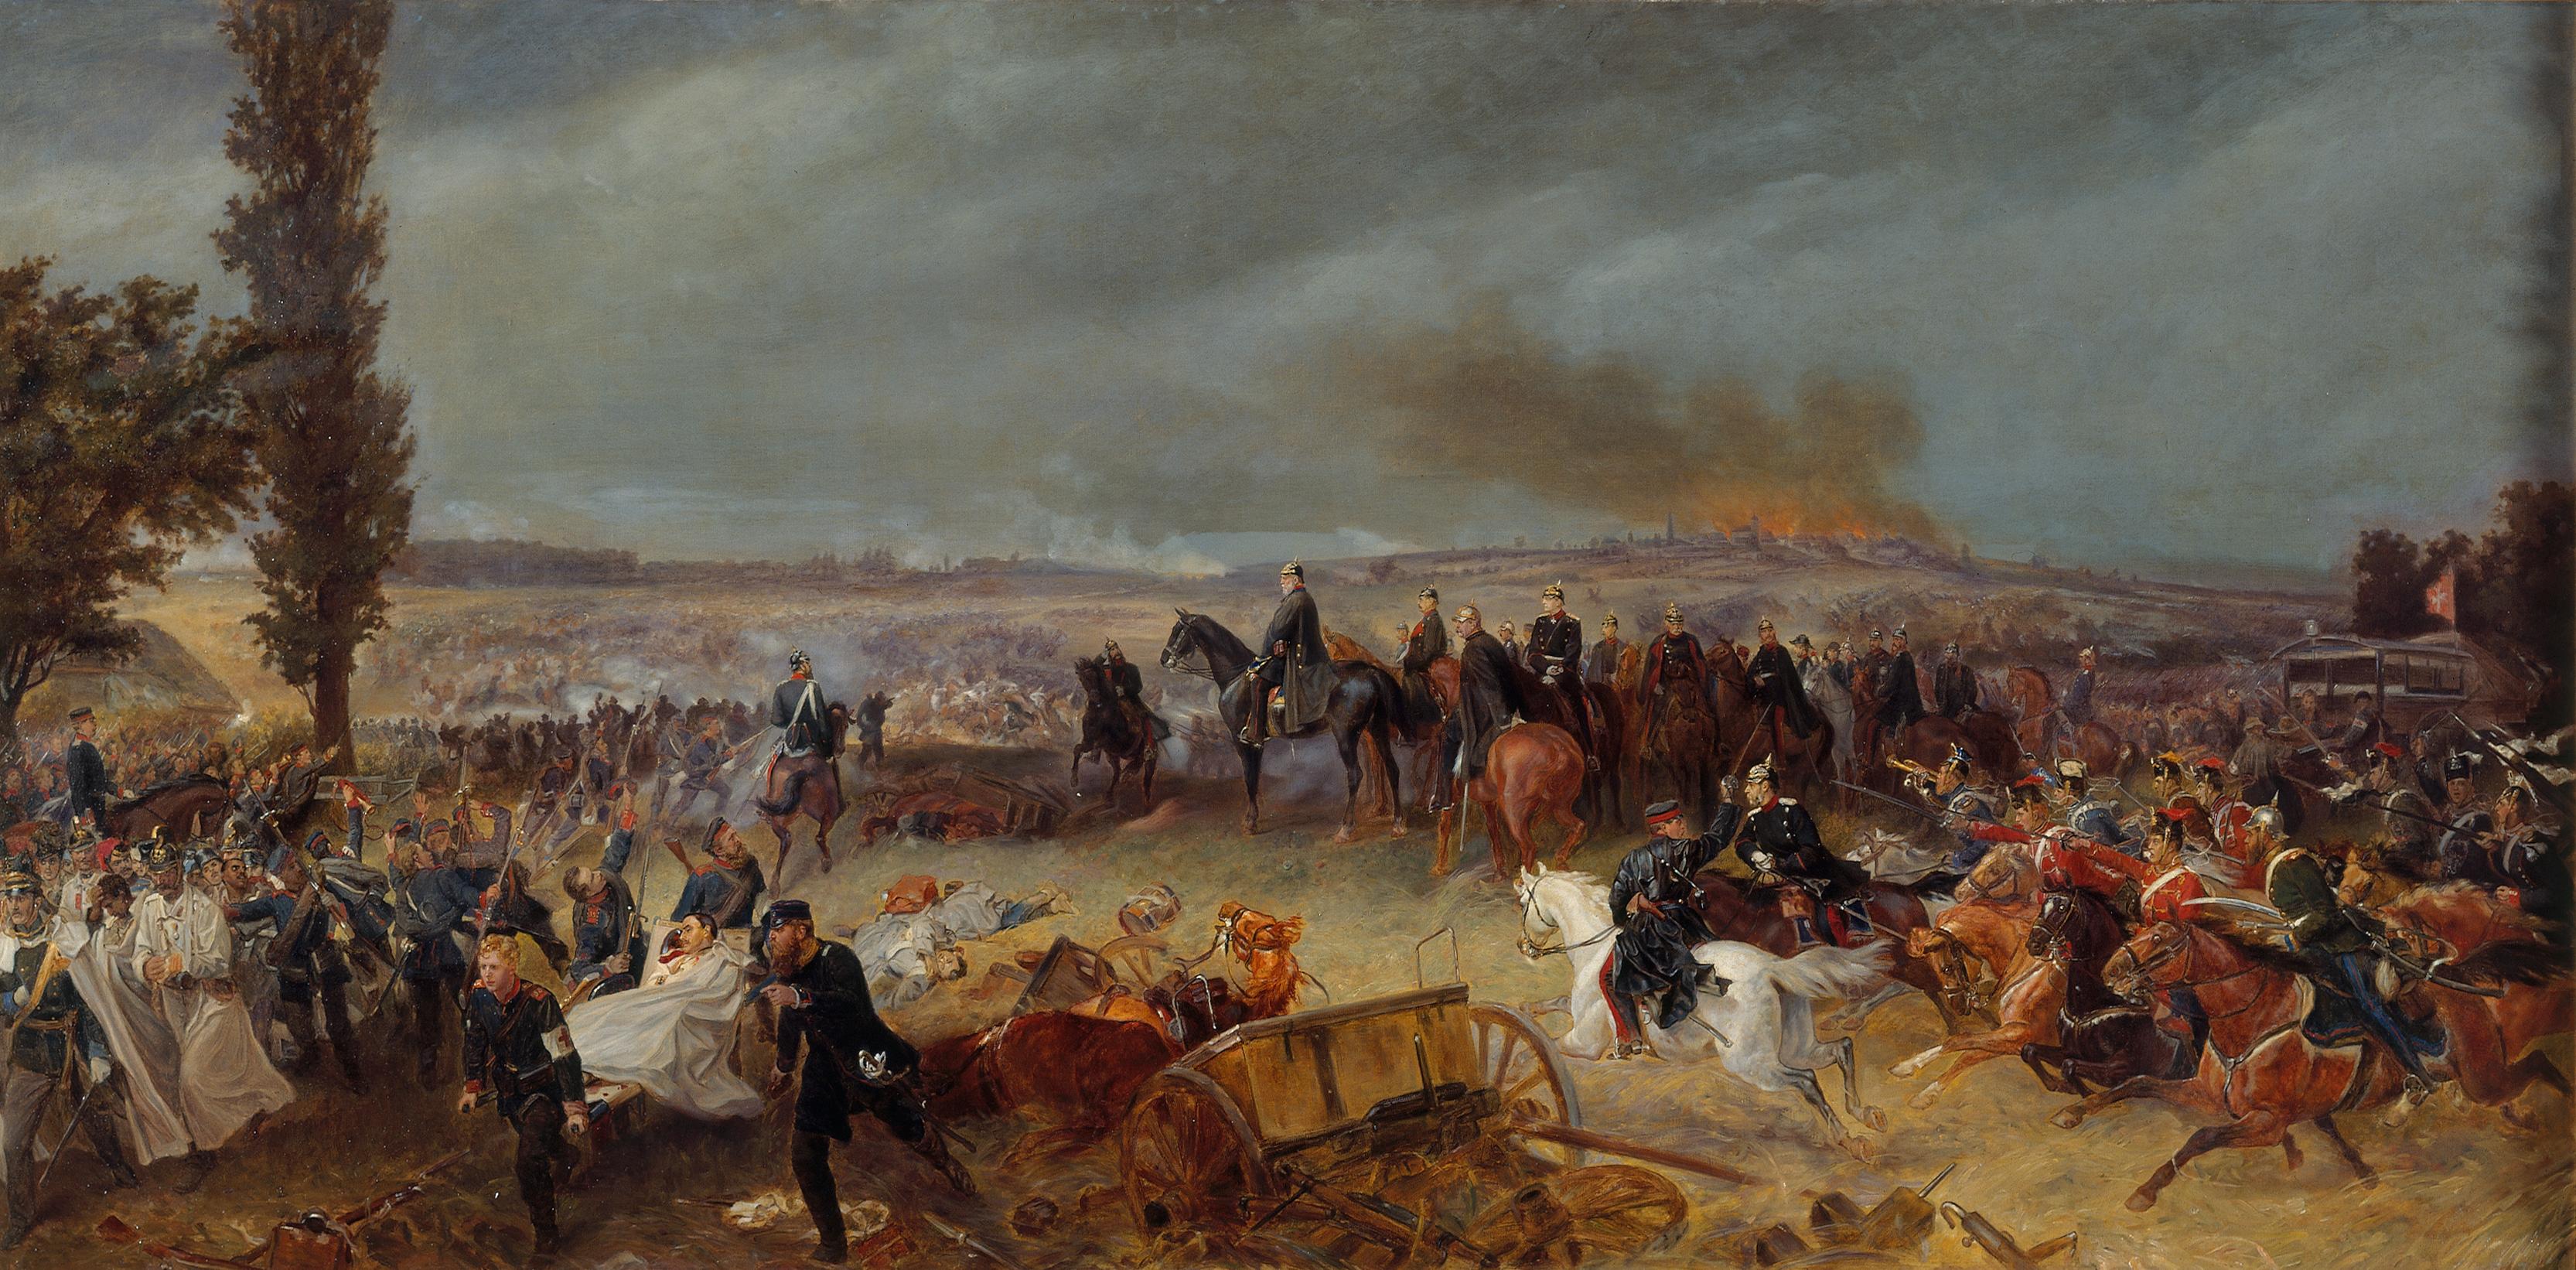 Gemälde: "Die Schlacht von Königgrätz" (3. Juli 1866), um 1869